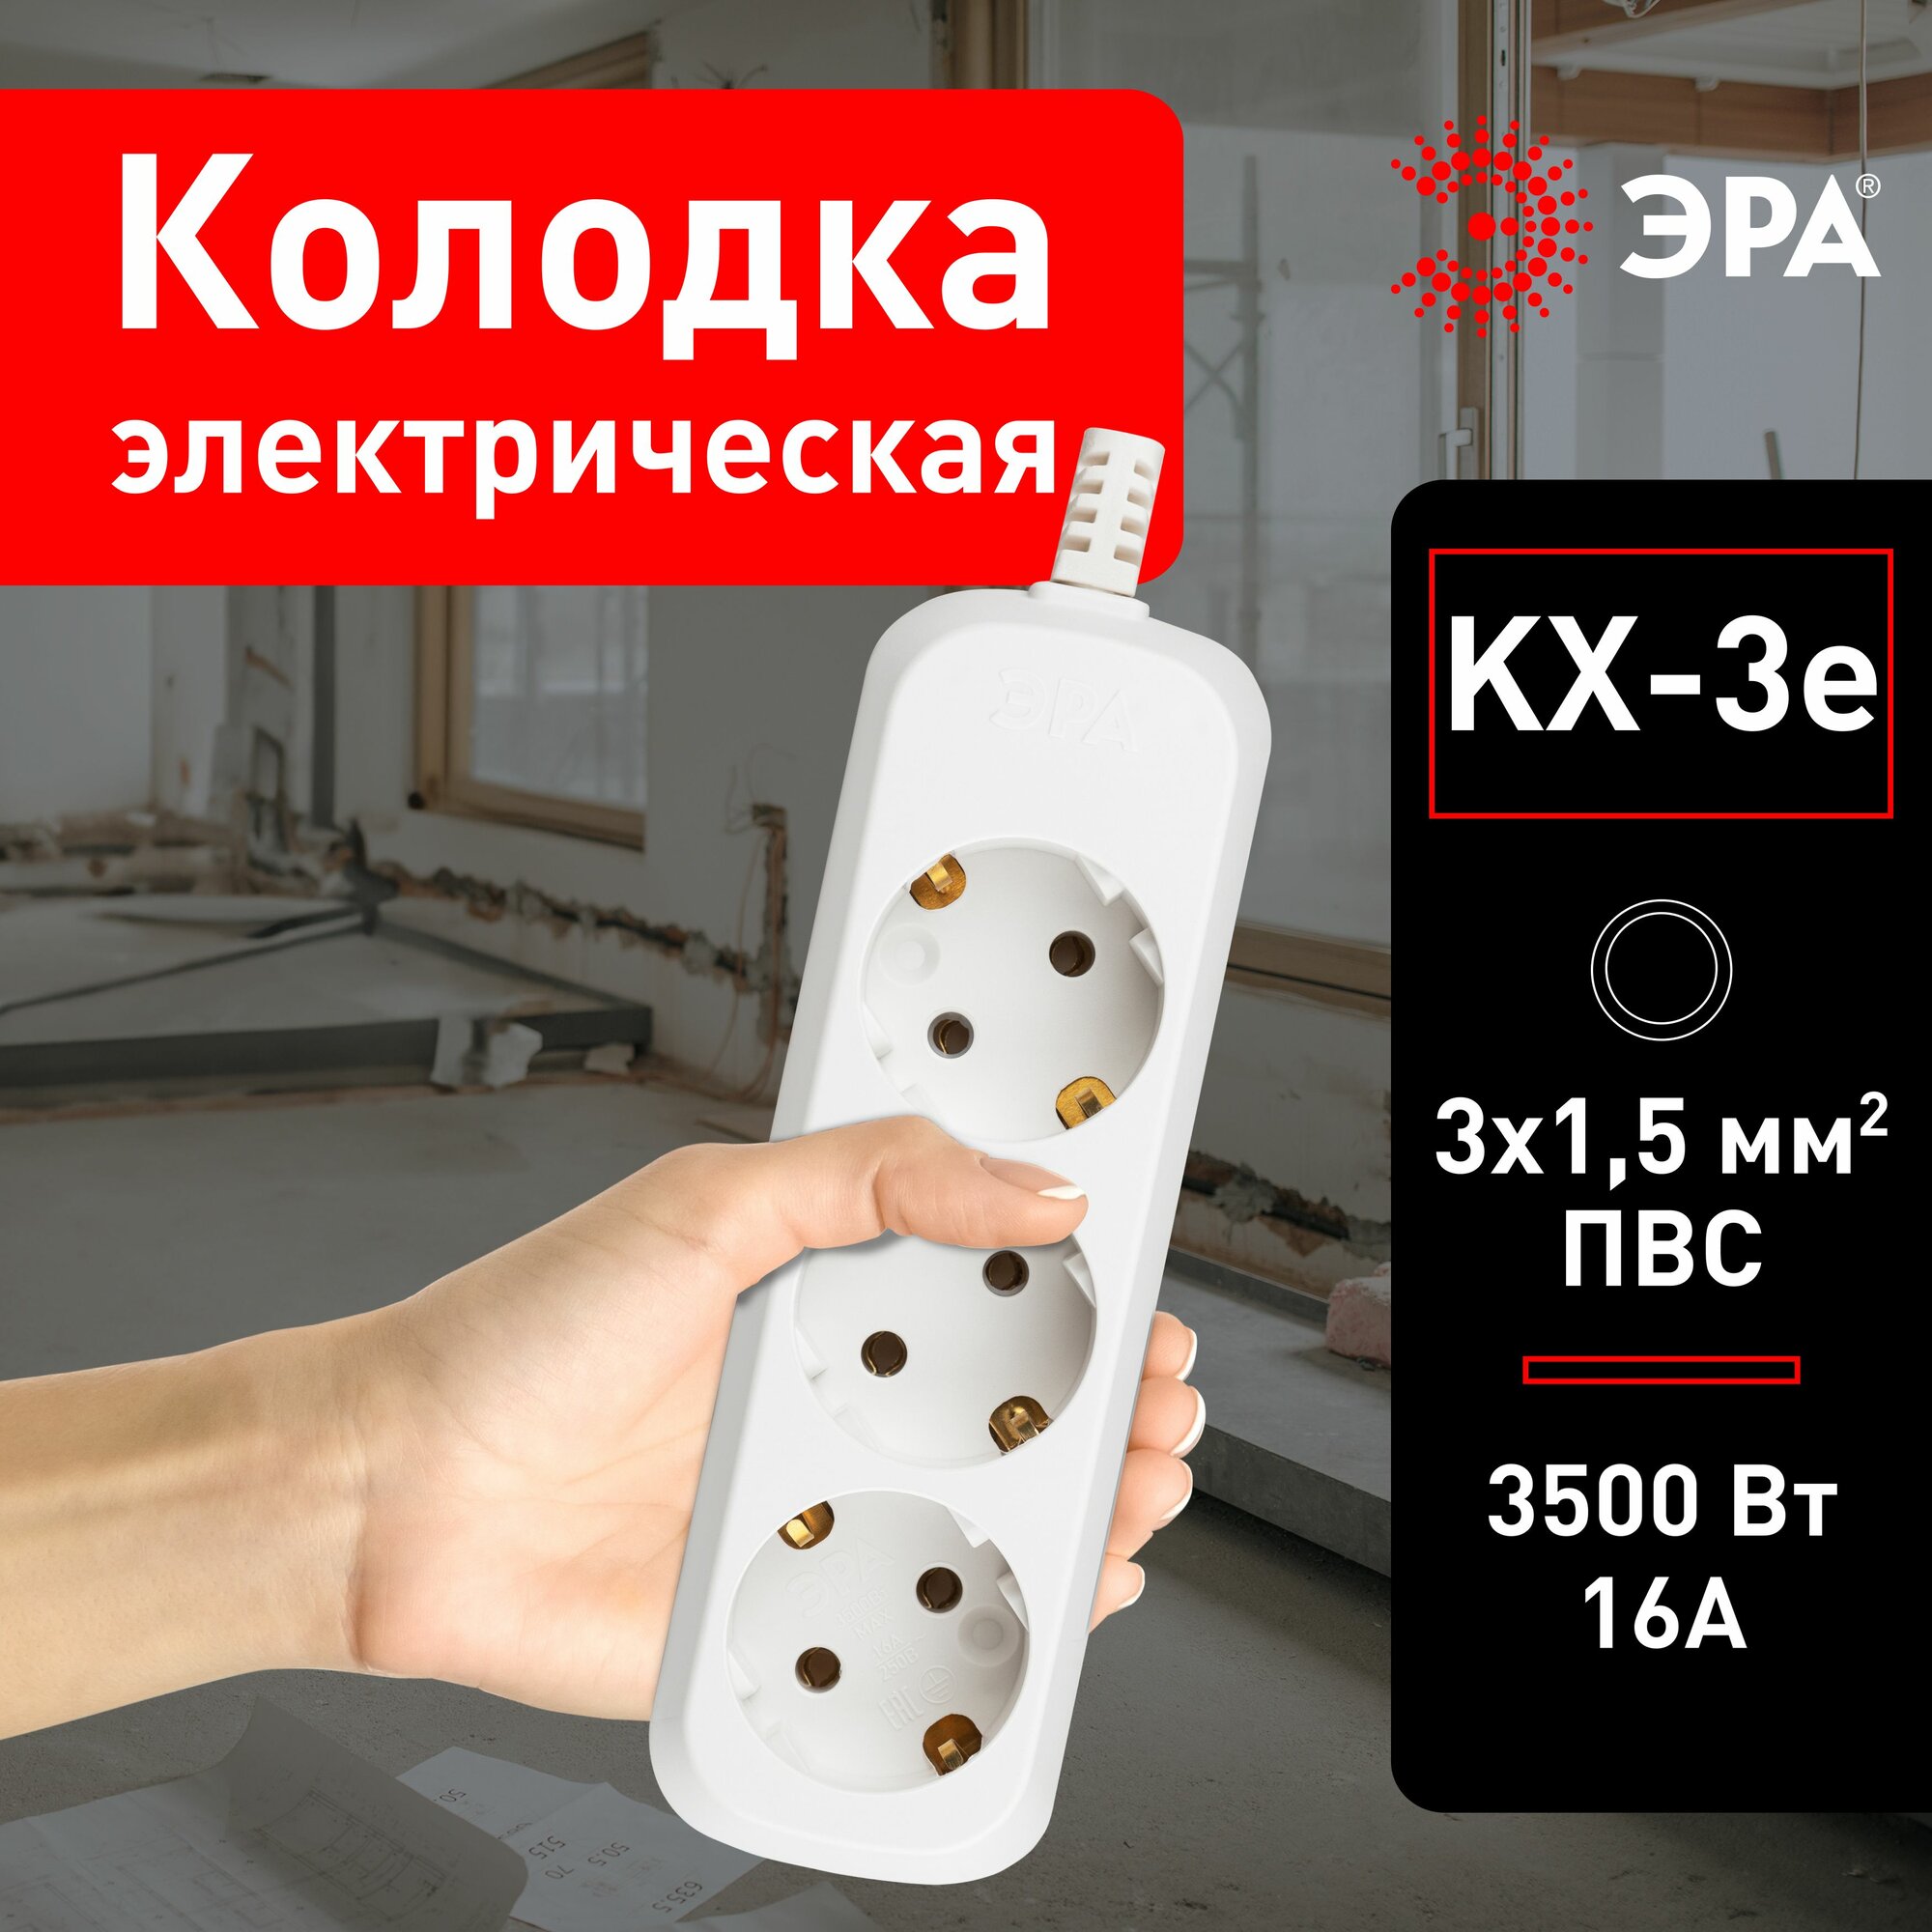 Колодка для удлинителя ЭРА KX-3e электрическая розеточная с зазeмлением 3 гнезда, 16 А, 3500 Вт, 3x1,5мм2